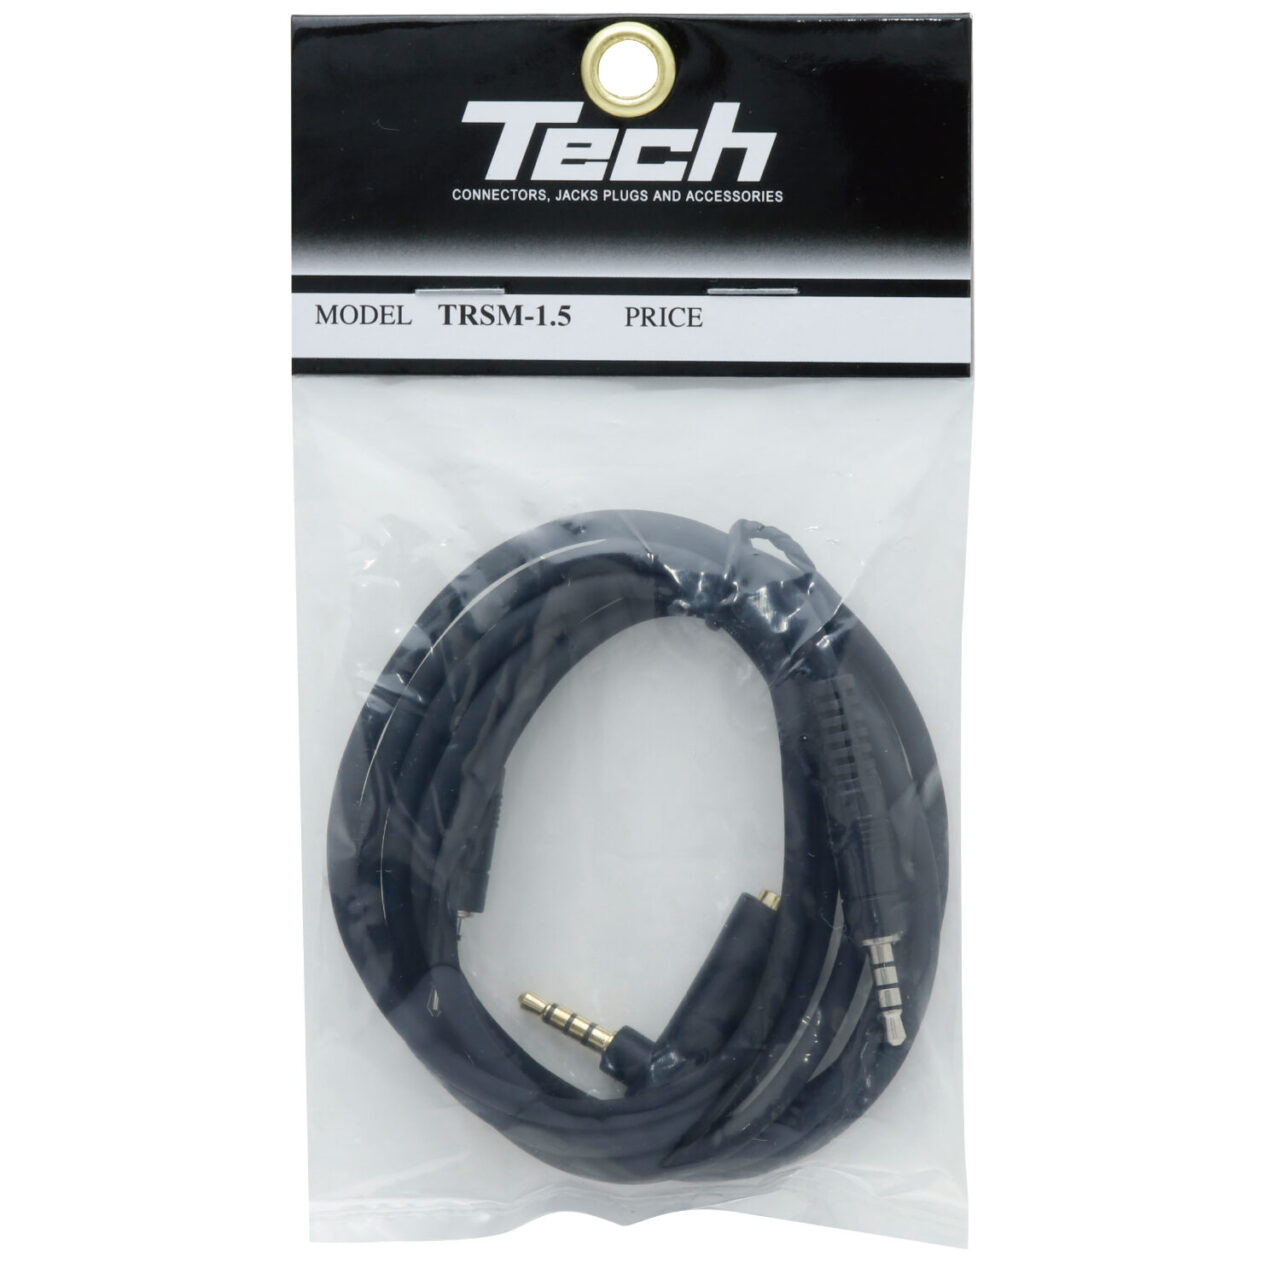 Tech TRSM-1.5 3.5mm